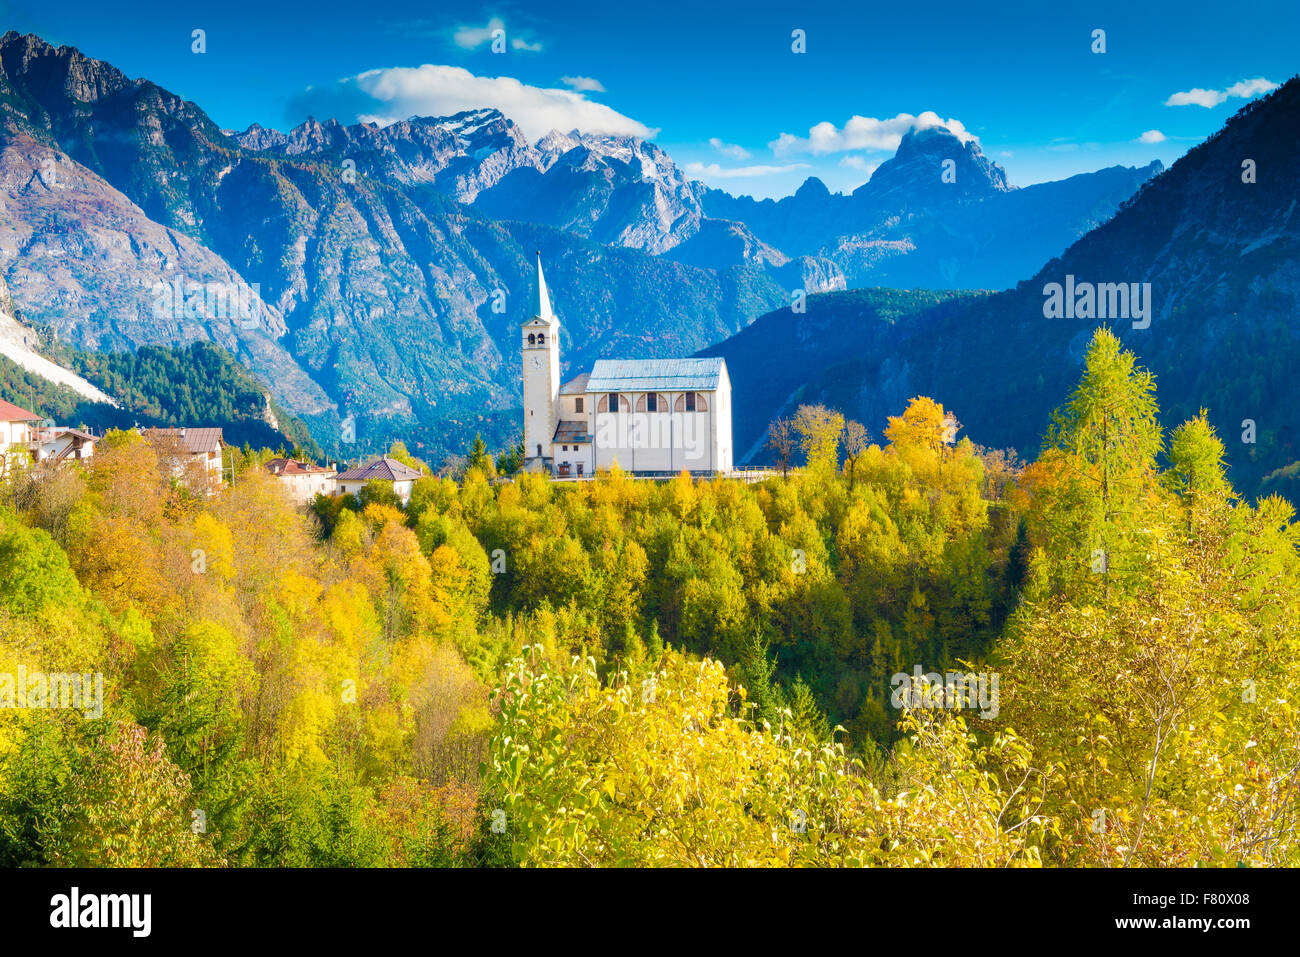 L'église et de la Dolomite Peaks, près de Cortina D'Ampezzo, Italie, Alpes Italiennes Banque D'Images